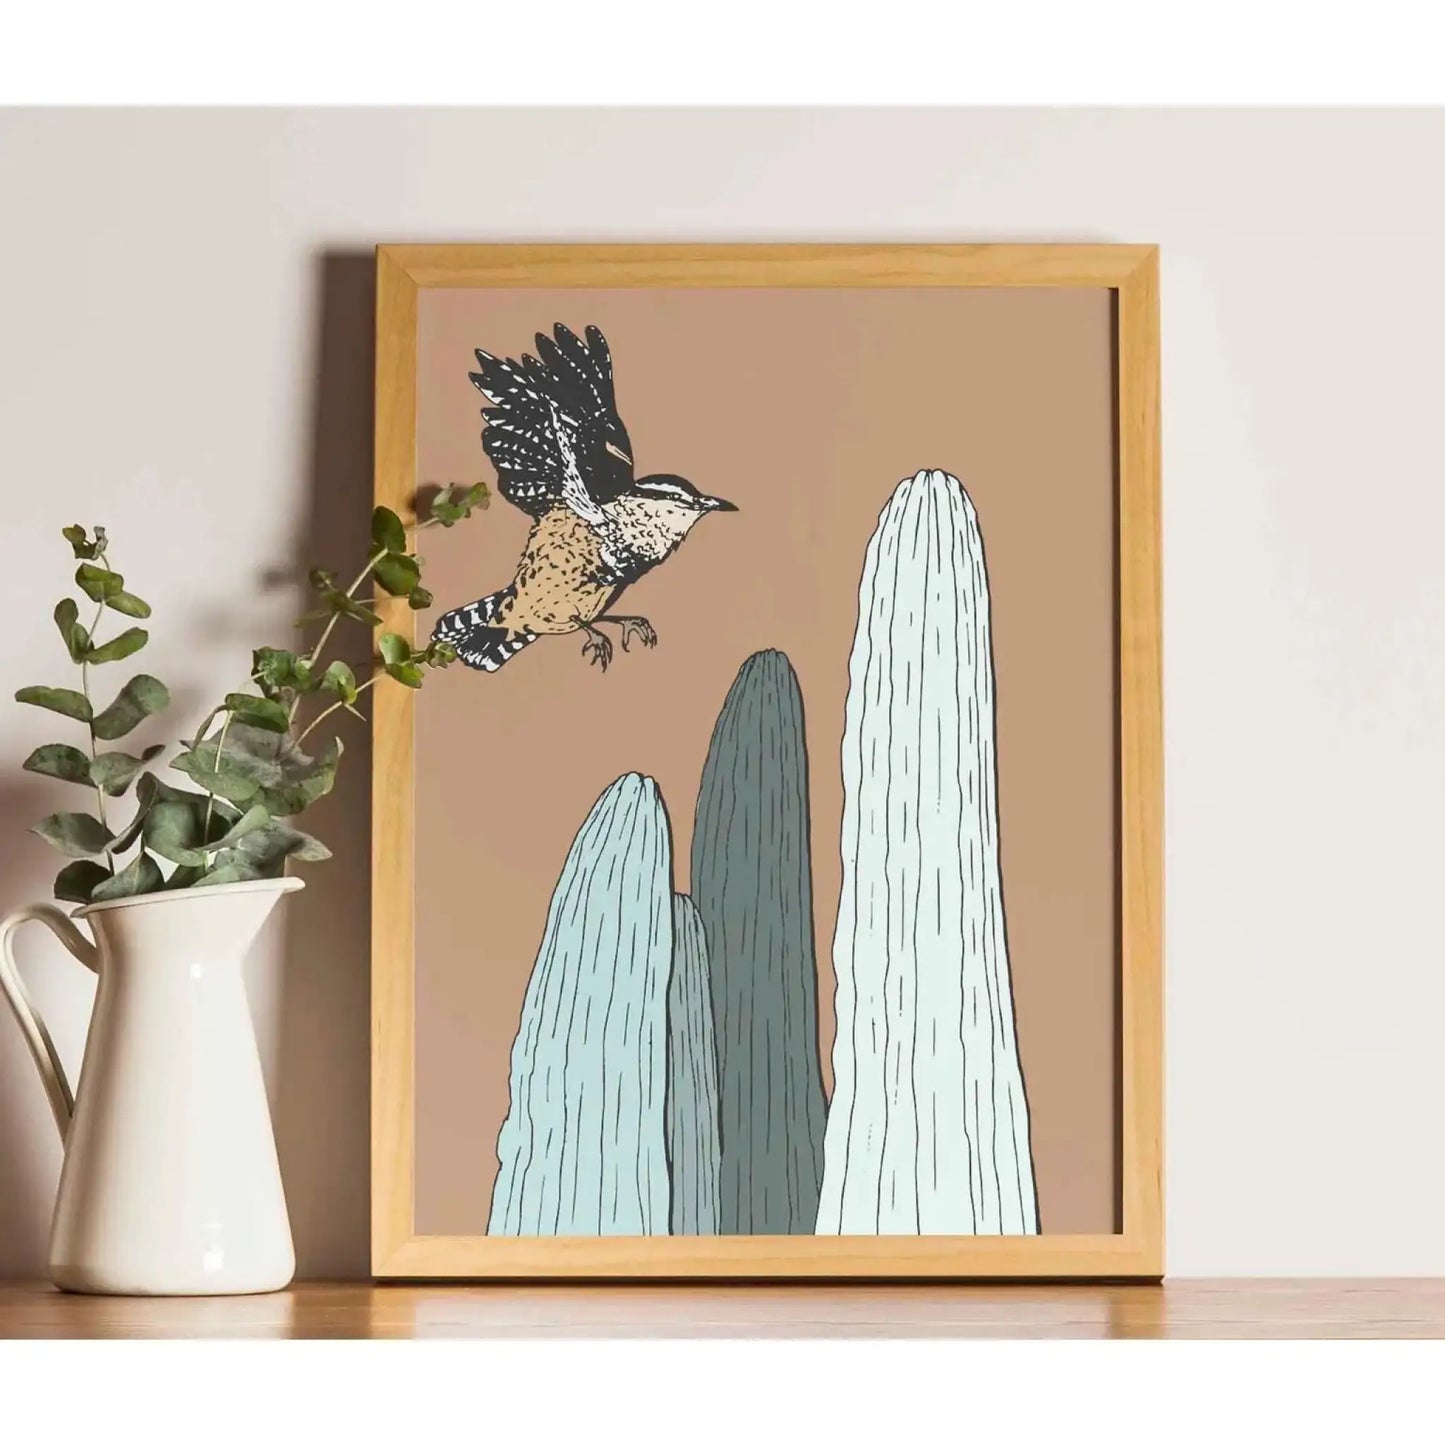 Cactus and Bird Art Print